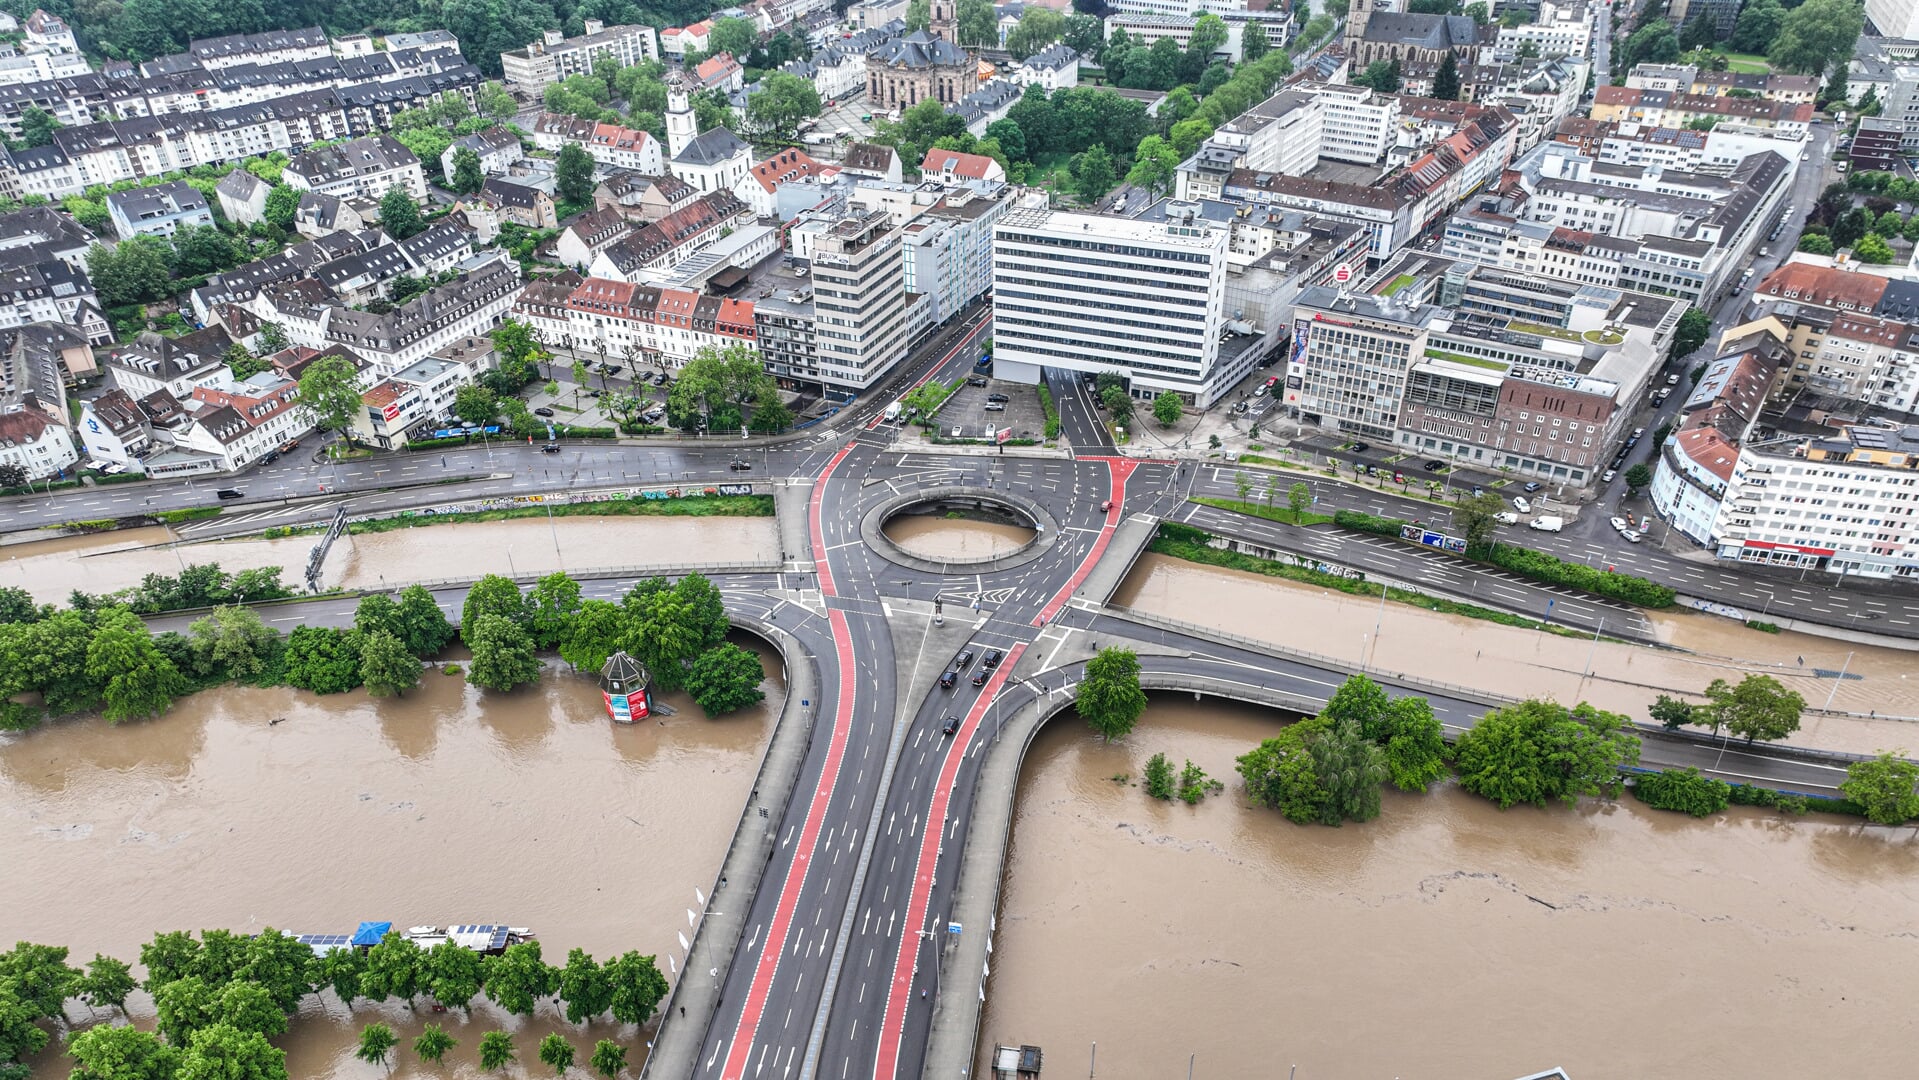  Heftiger Dauerregen hat im Saarland vielfache Überflutungen wie etwa in Saarbrücken verursacht. Foto: 